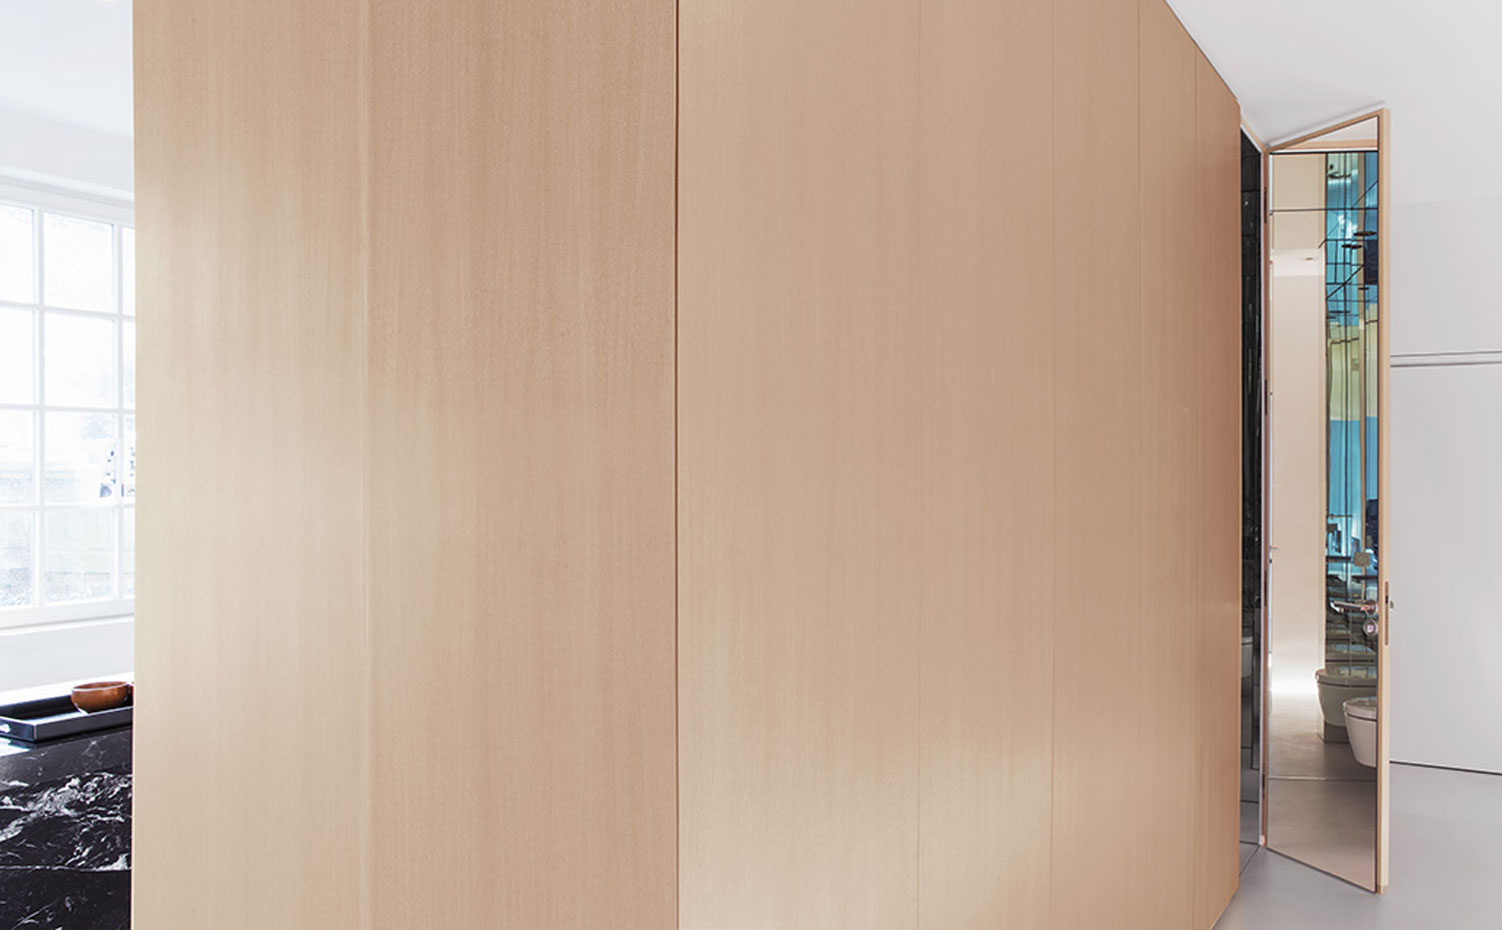 TS01-Boesenberg-Print. Los muebles de madera de roble a medida unifican el criterio estético del apartamento